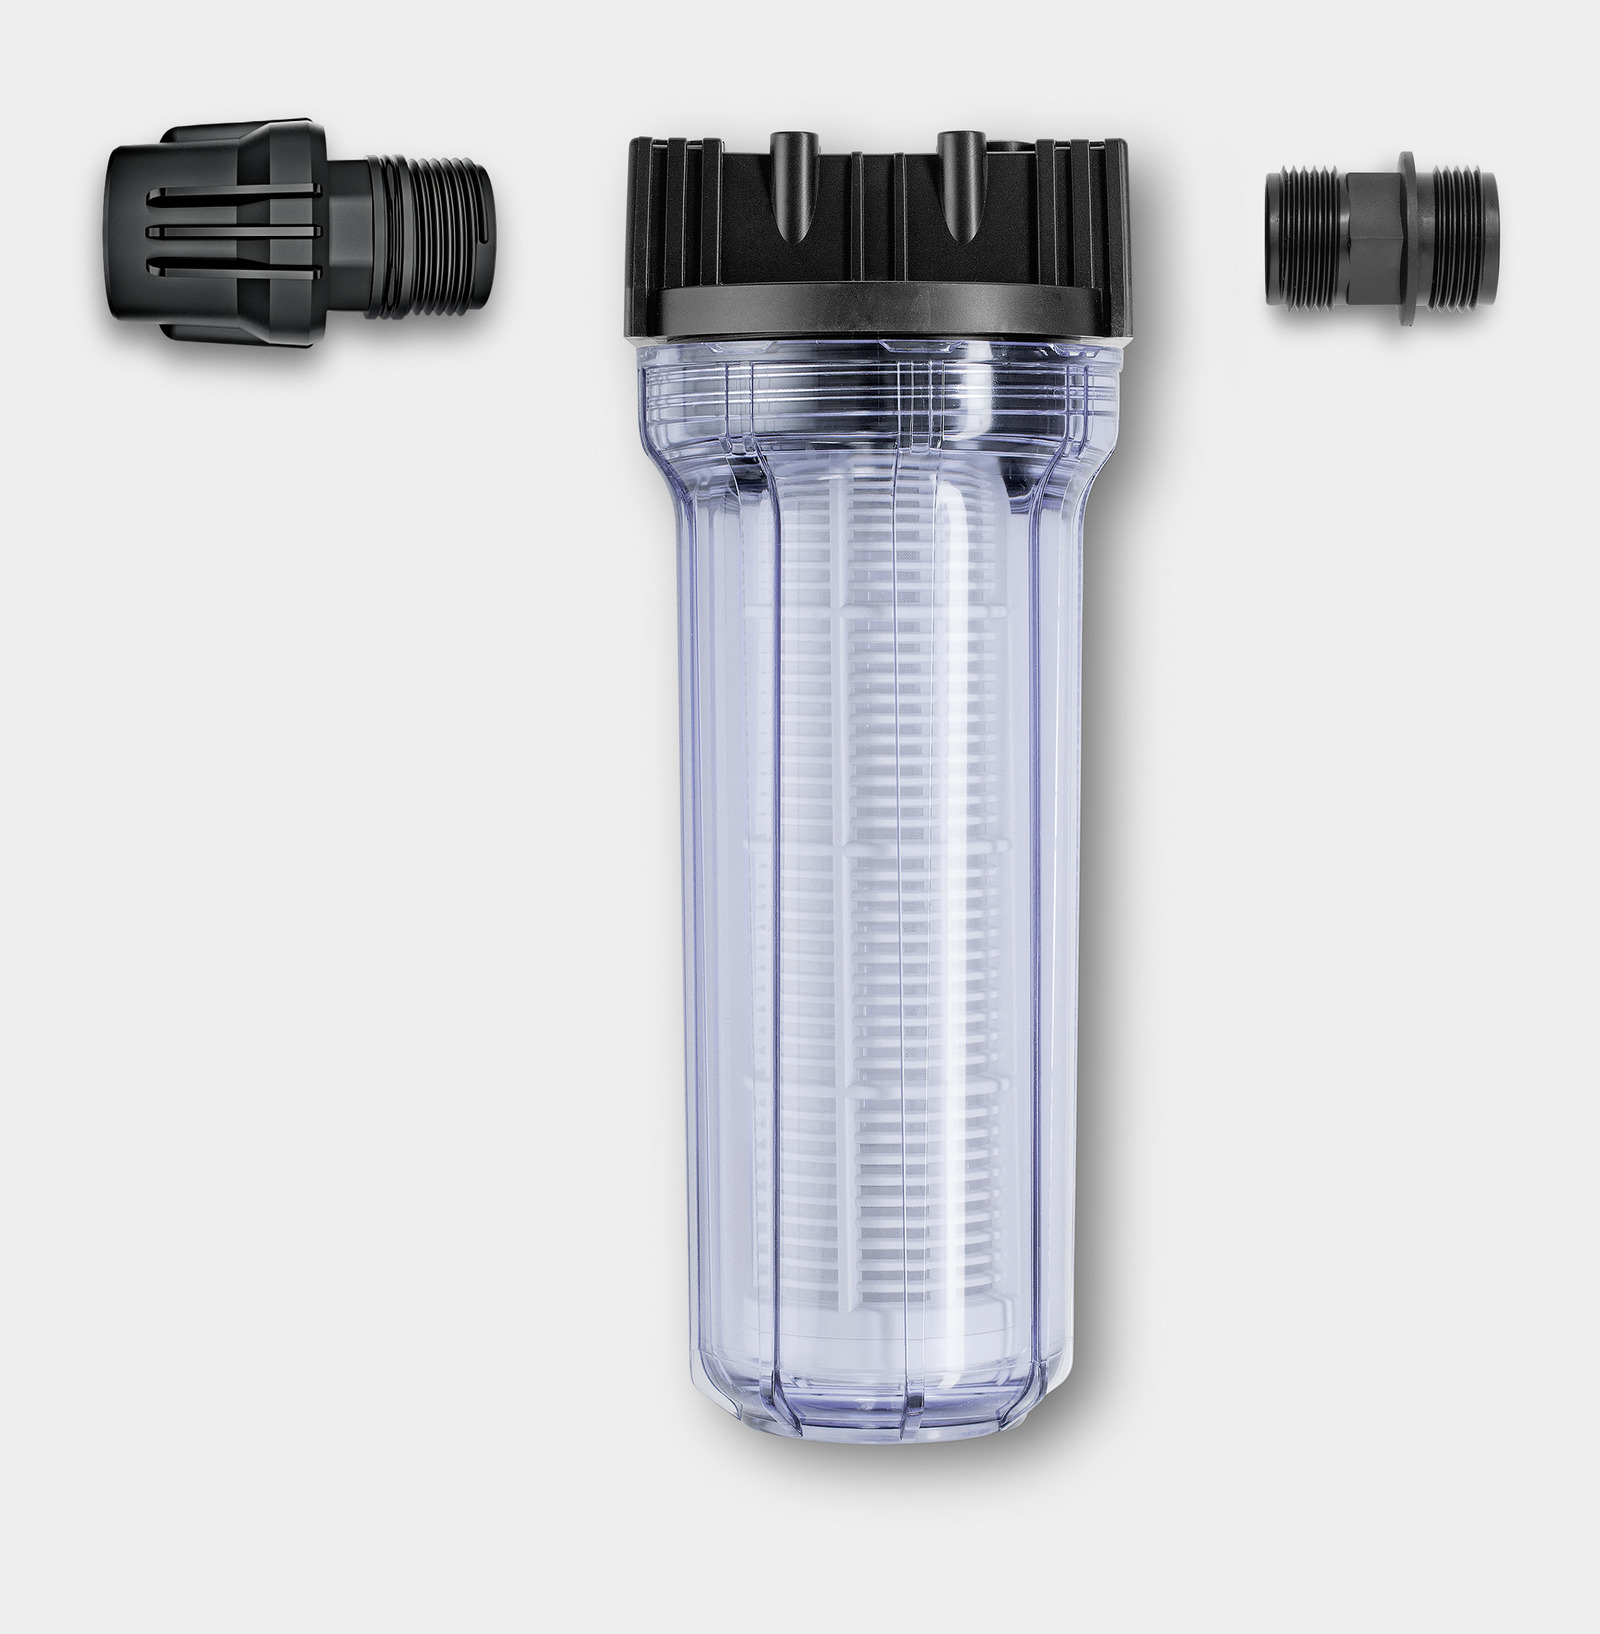 Фильтр для очистки песка. Karcher фильтр для воды (2.642-794.0). Входной фильтр воды, 1/2"-1/2" Tecomec. Фильтр входной Karcher. Фильтр водяной входной для АВД, 1/2"-1/2" 150 Mic (m-mof0006).